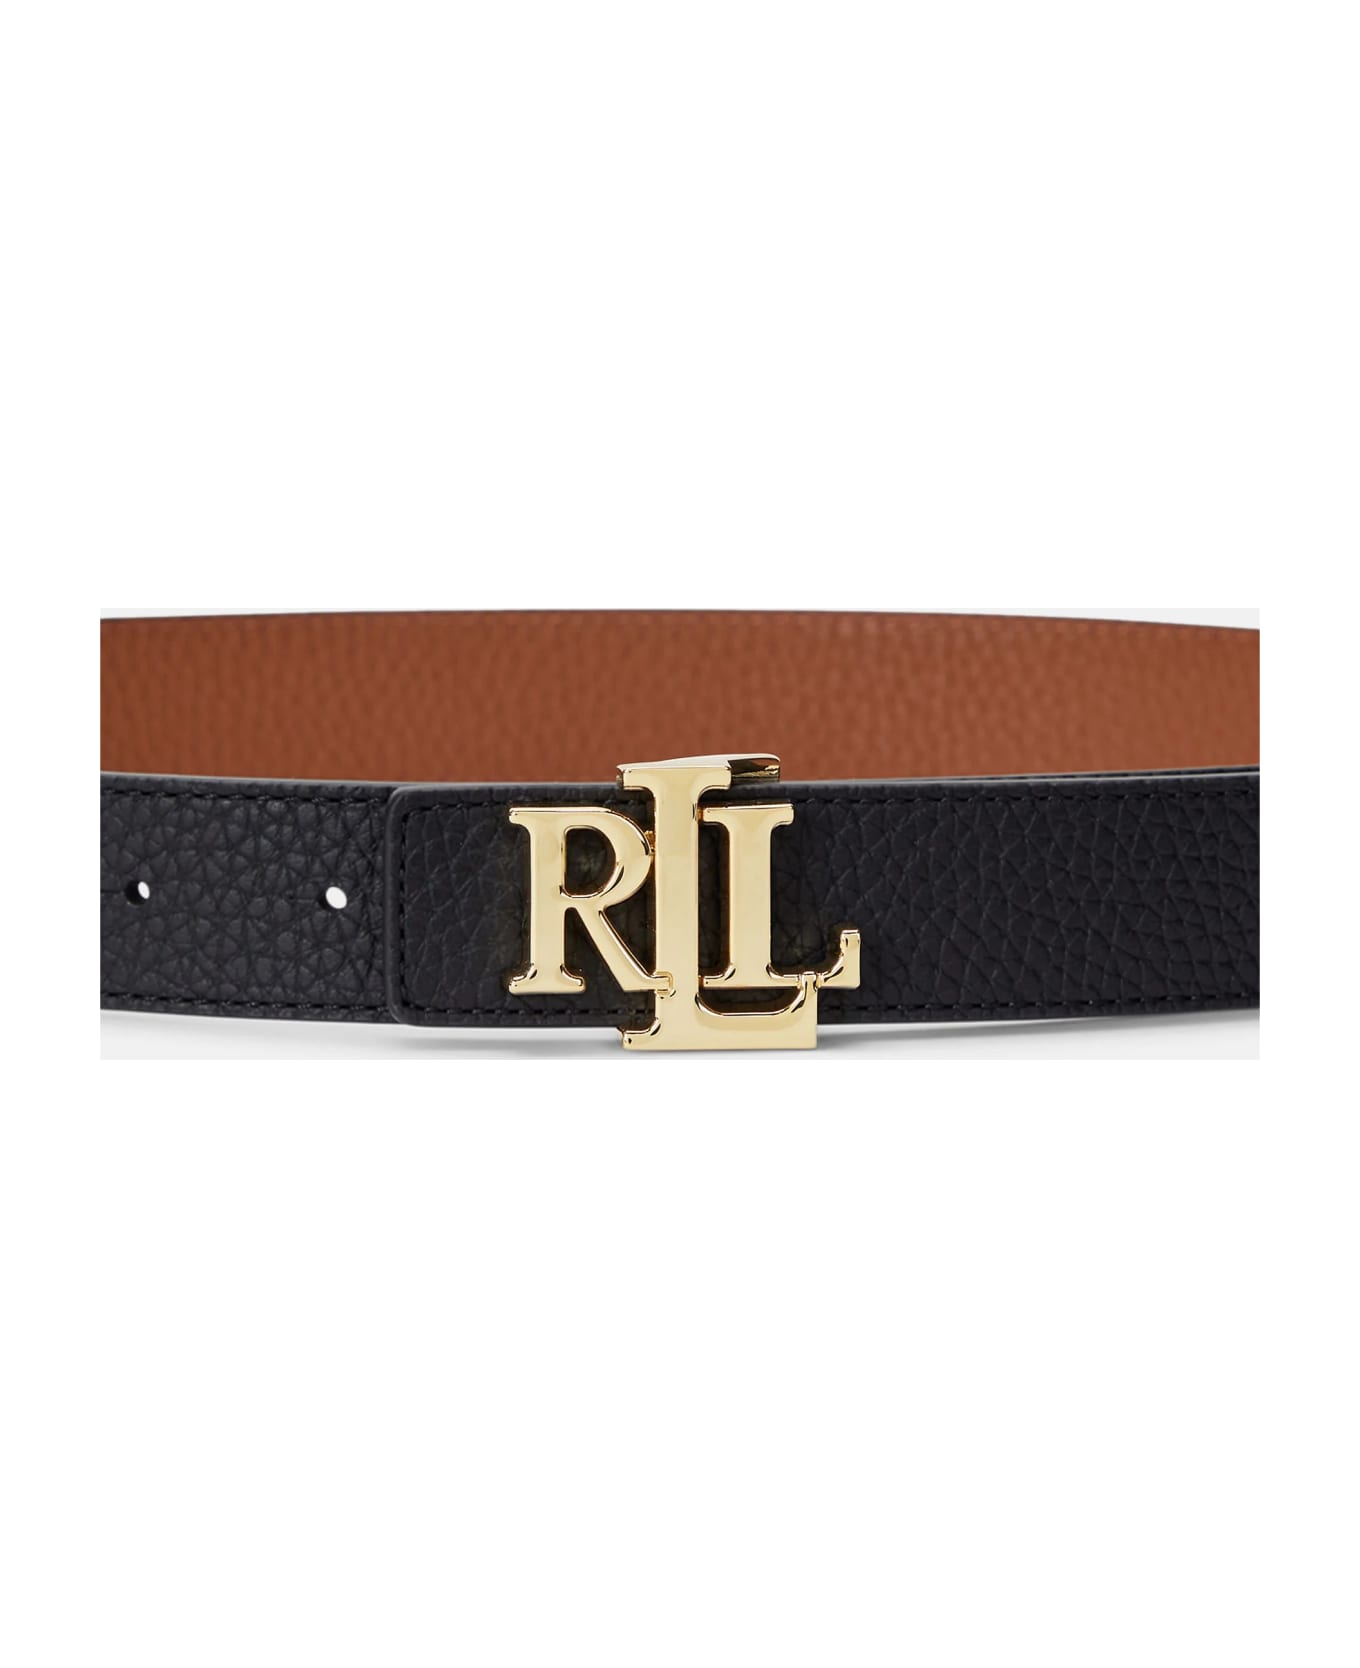 Ralph Lauren Rev Lrl 20 Belt Skinny - Black Lauren Tan